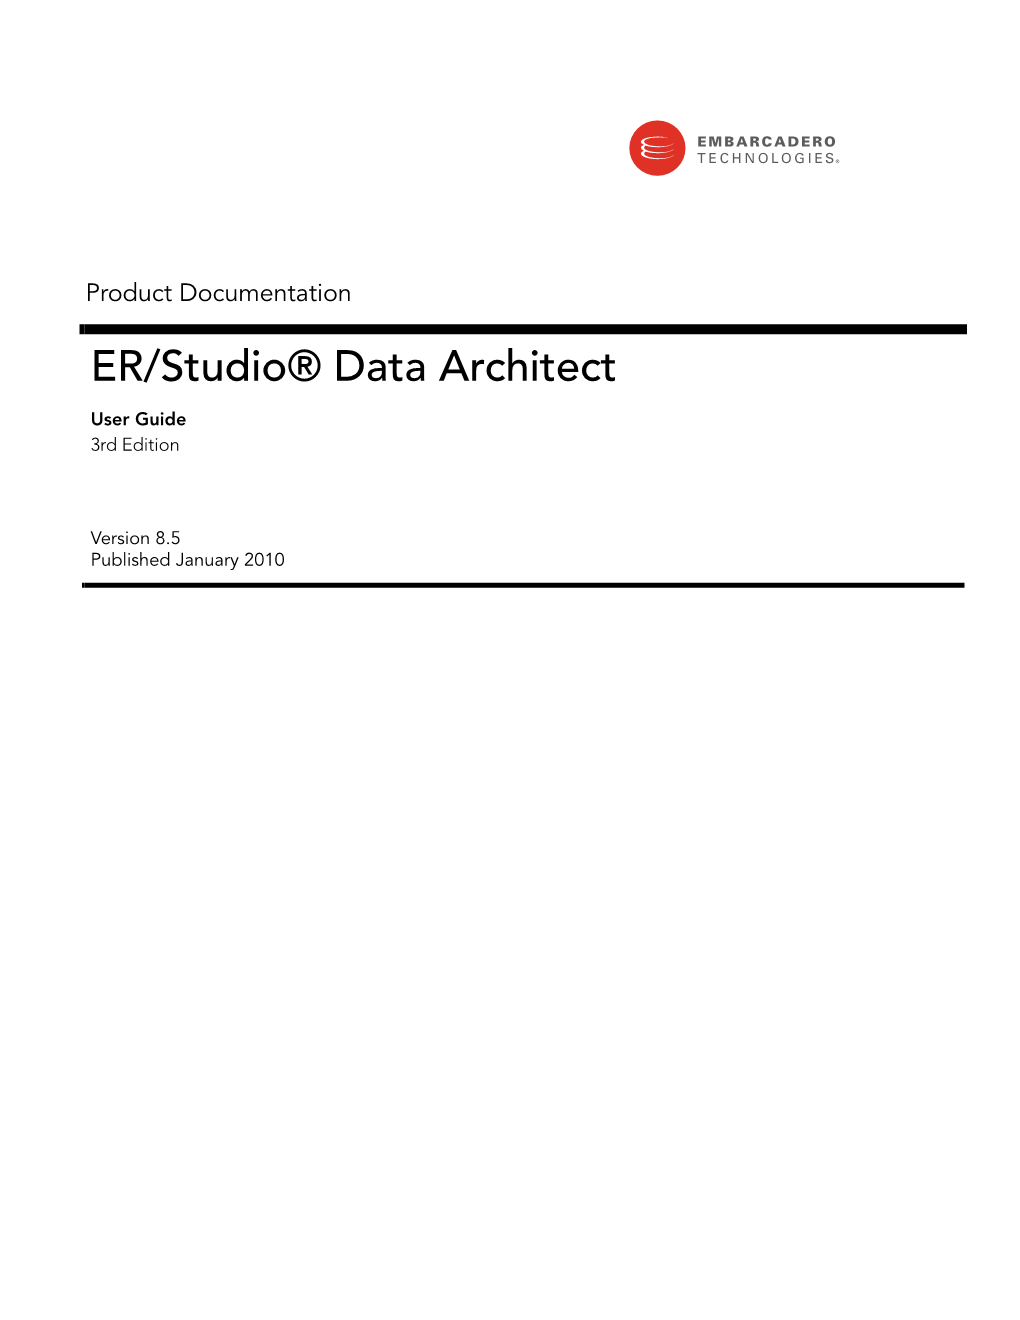 ER/Studio Data Architect 8.5 User Guide